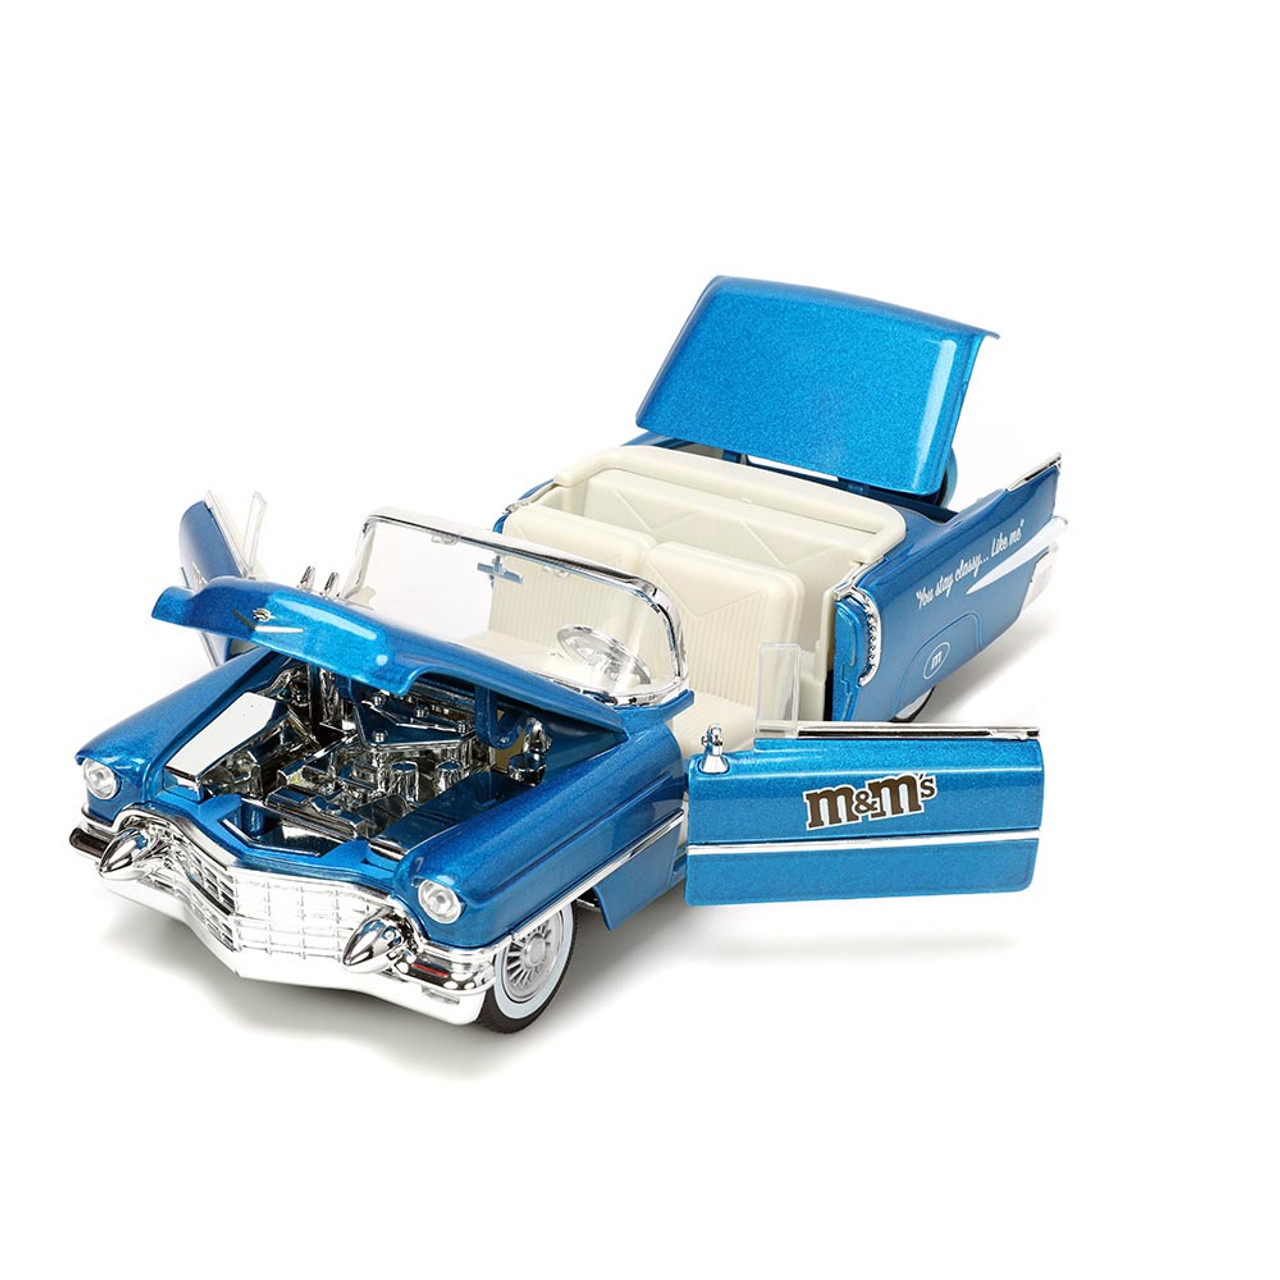 M&M'S - Blue M&M Metalfigs 4” Die-Cast Figure by Jada Toys